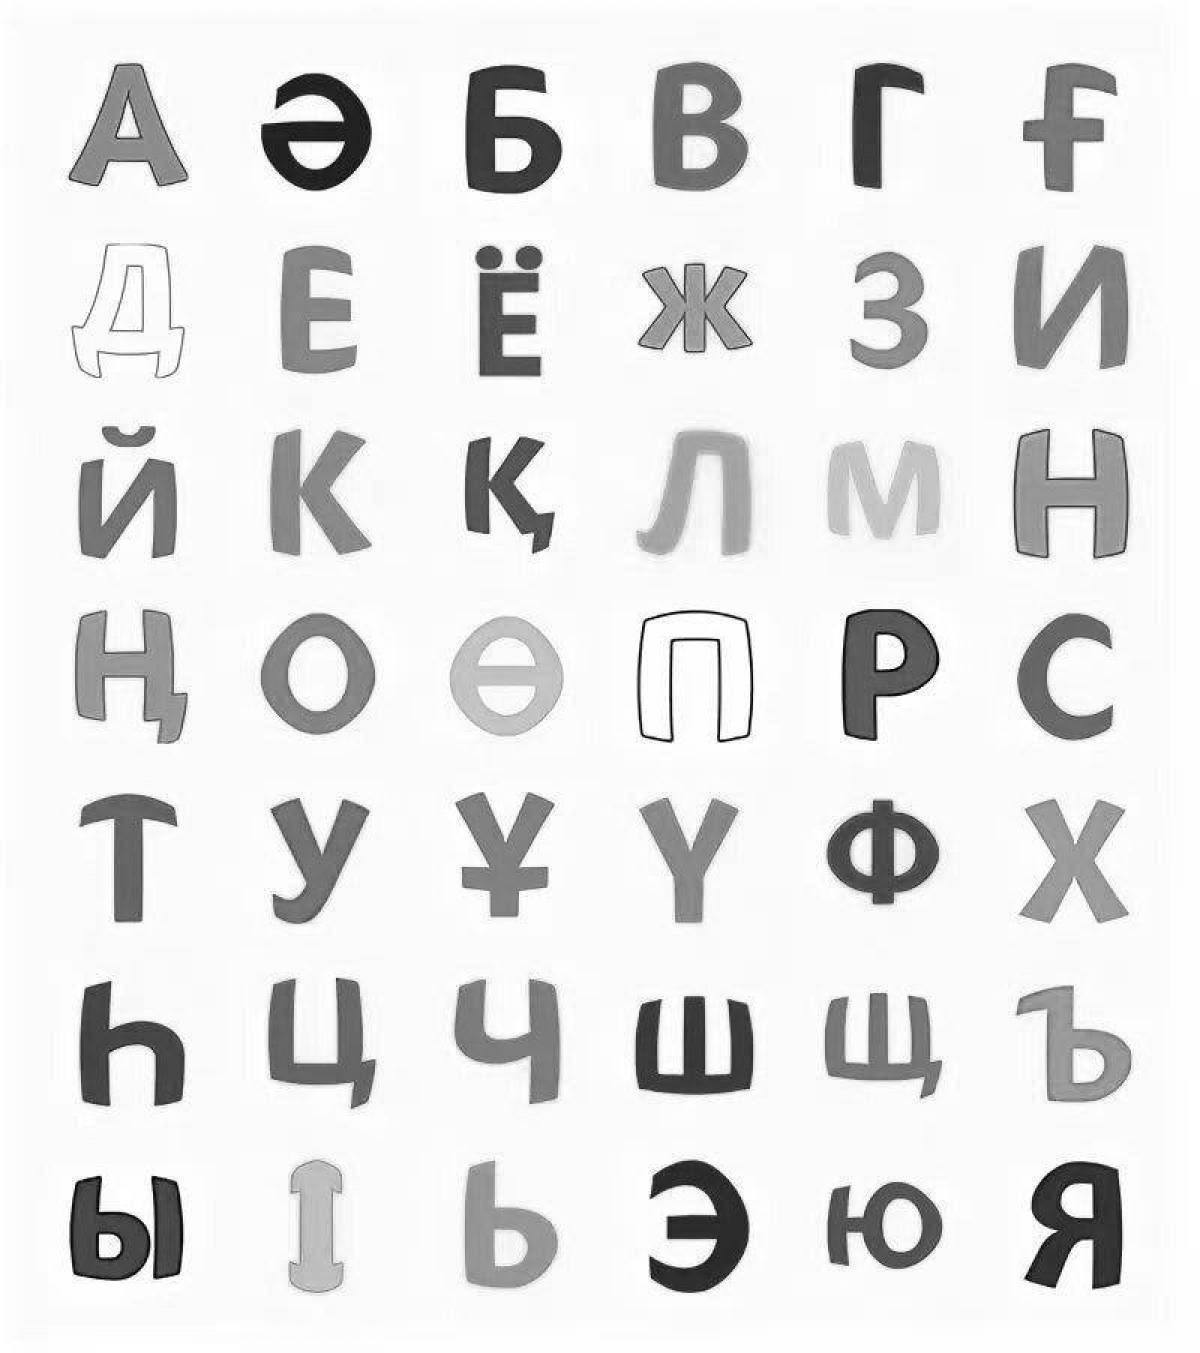 Coloring book alluring arіpter kazakh alphabet